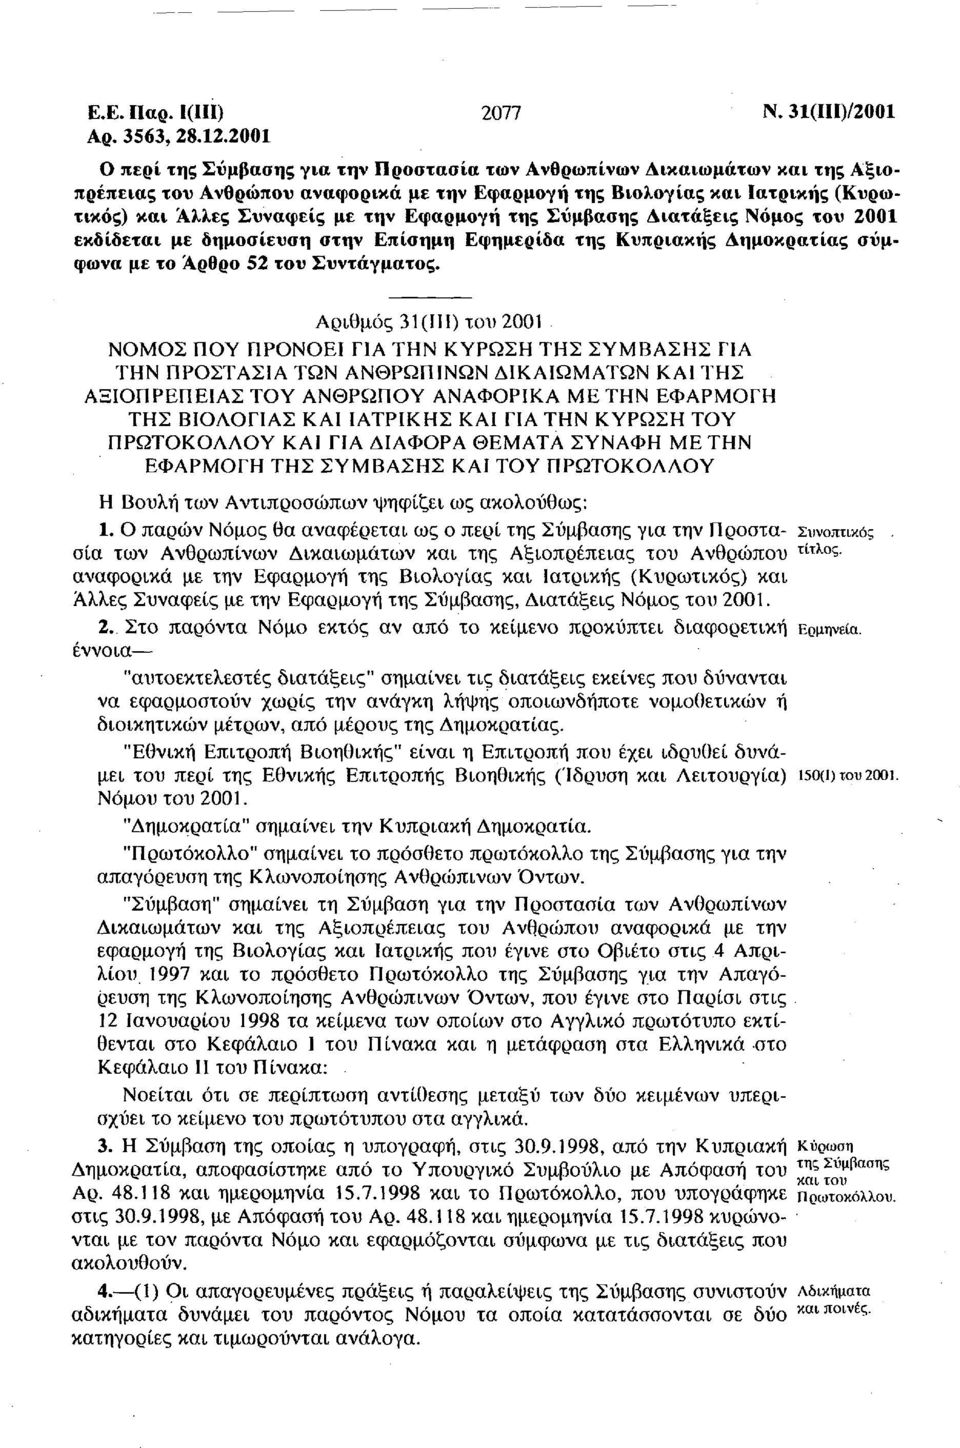 Εφαρμογή της Σύμβασης Διατάξεις Νόμος του 2001 εκδίδεται με δημοσίευση στην Επίσημη Εφημερίδα της Κυπριακής Δημοκρατίας σύμφωνα με το Αρθρο 52 του Συντάγματος.